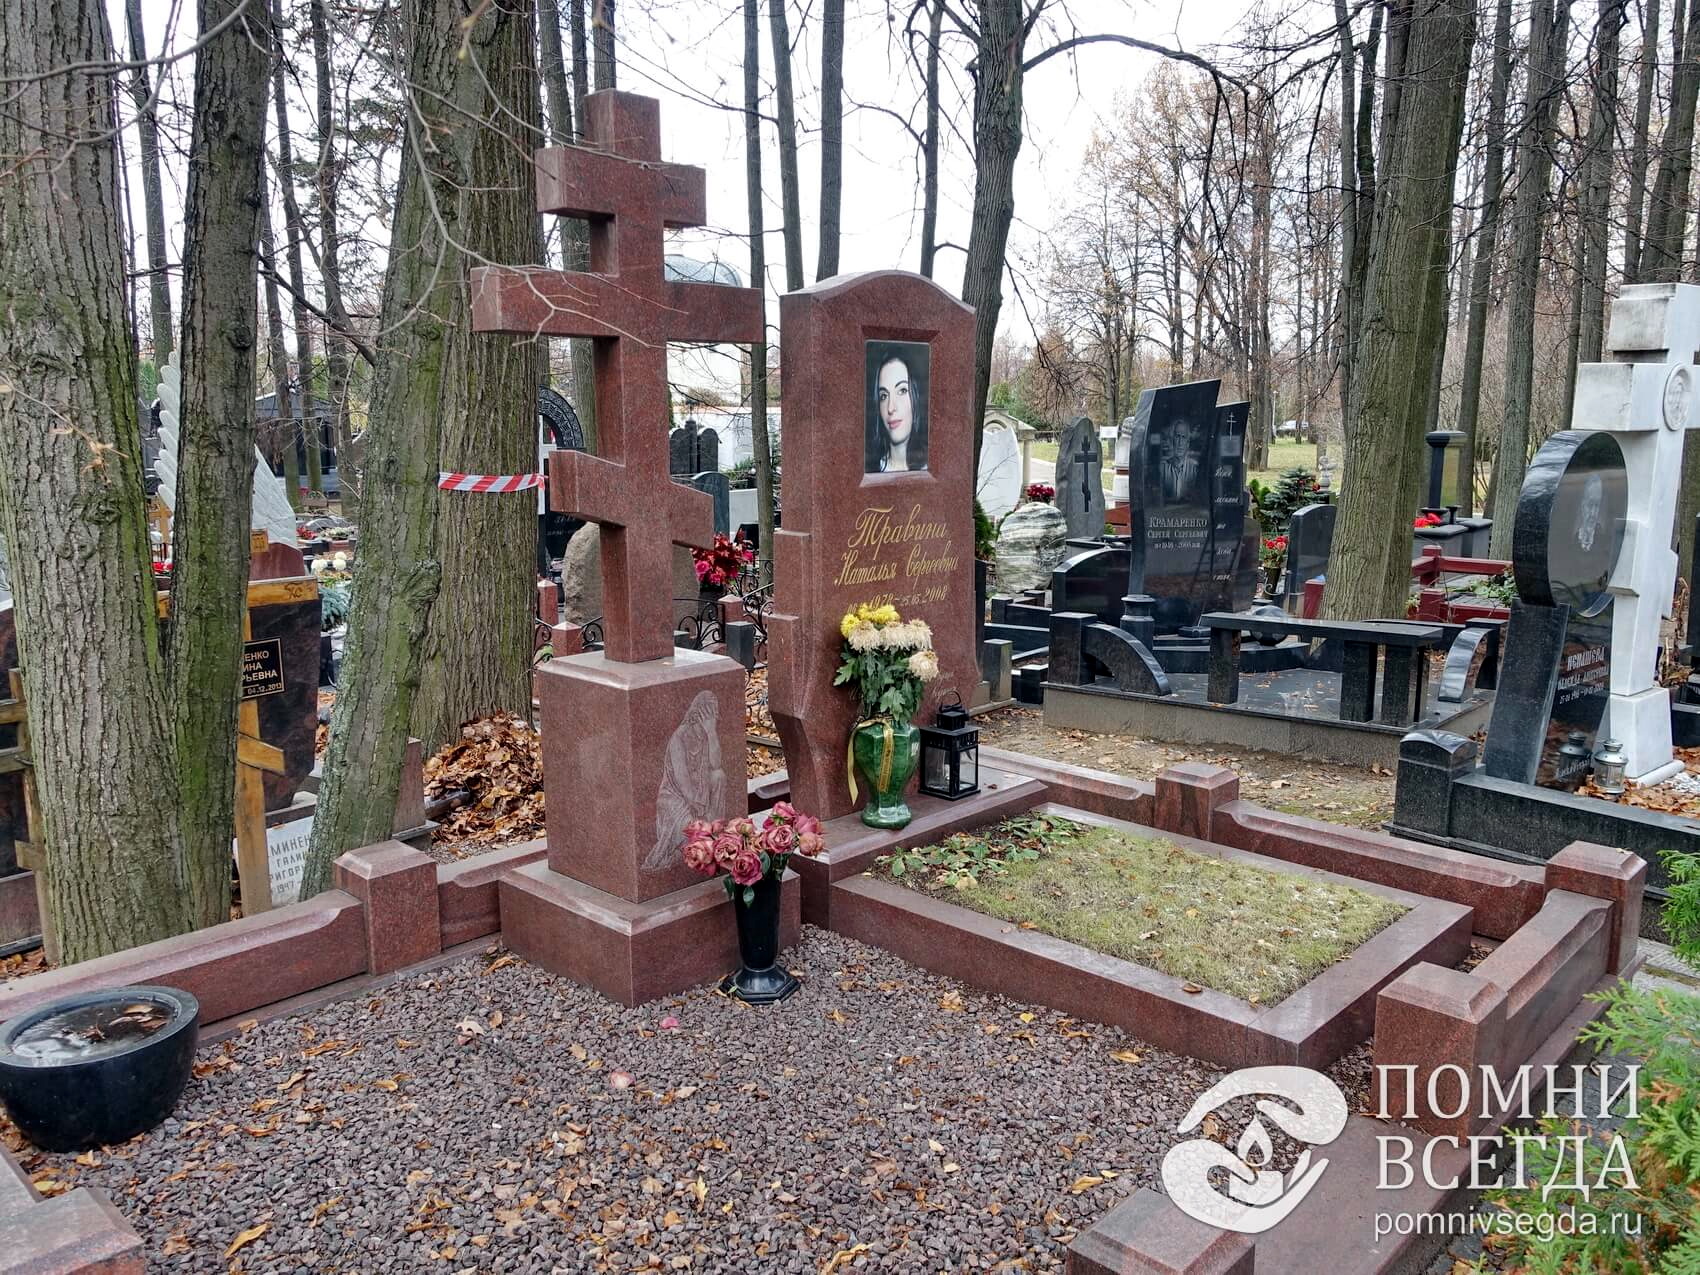 Надгробье необычной формы и восьмиконечный крест на массивном основании